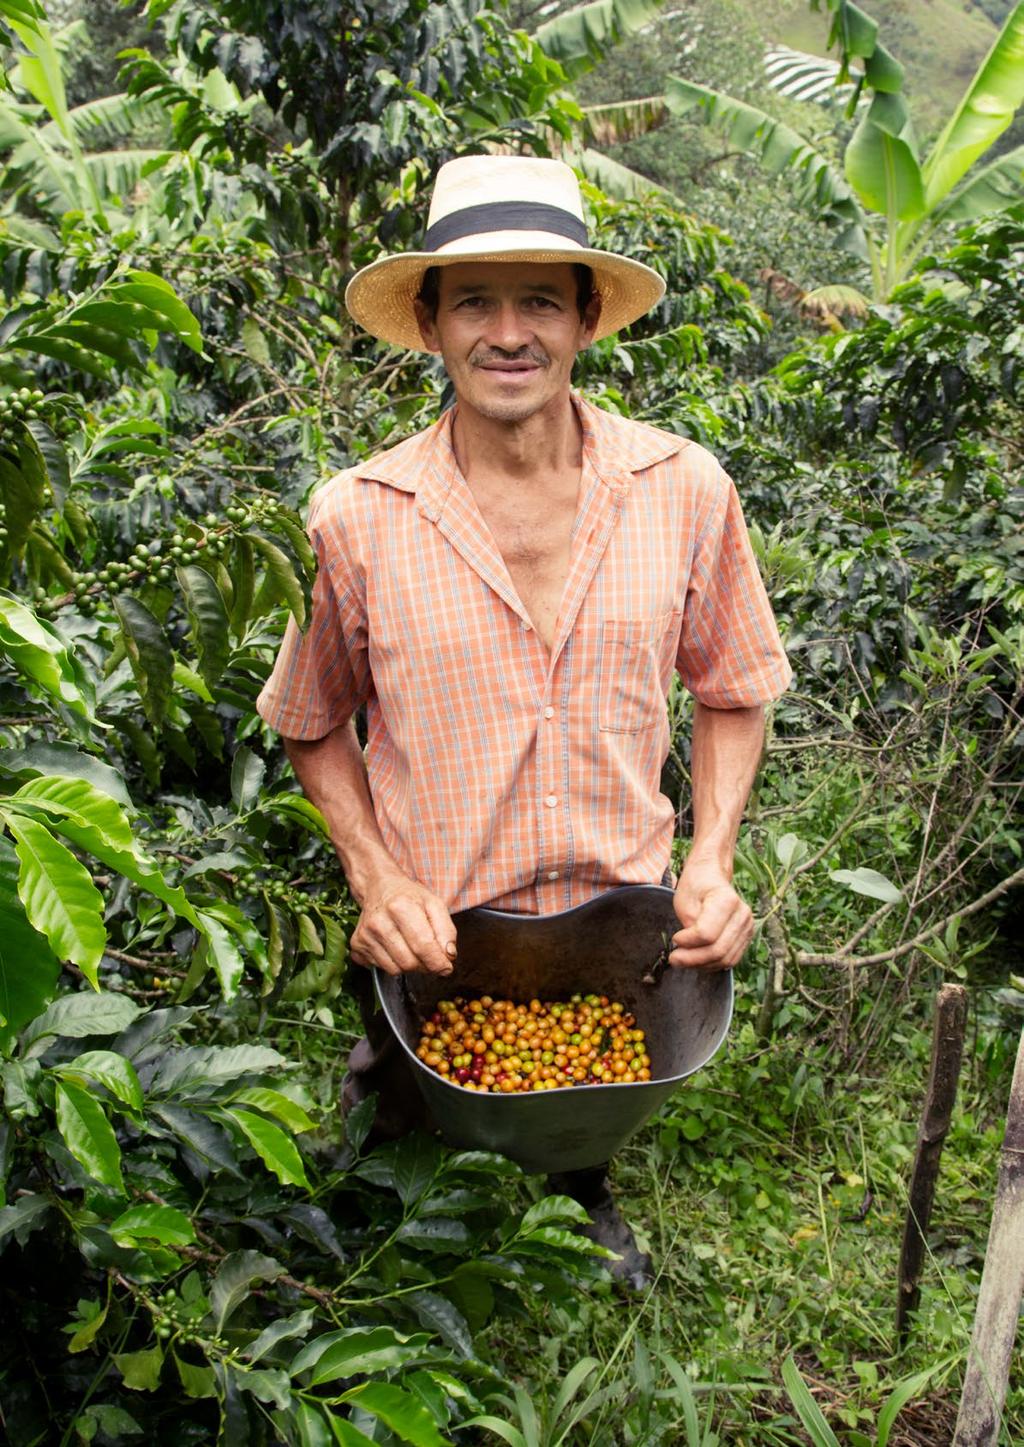 We werken samen met koffieboeren en partners als Rainforest Alliance om te zorgen dat koffieliefhebbers kunnen genieten van hun favoriete koffie. Nu en in de toekomst.